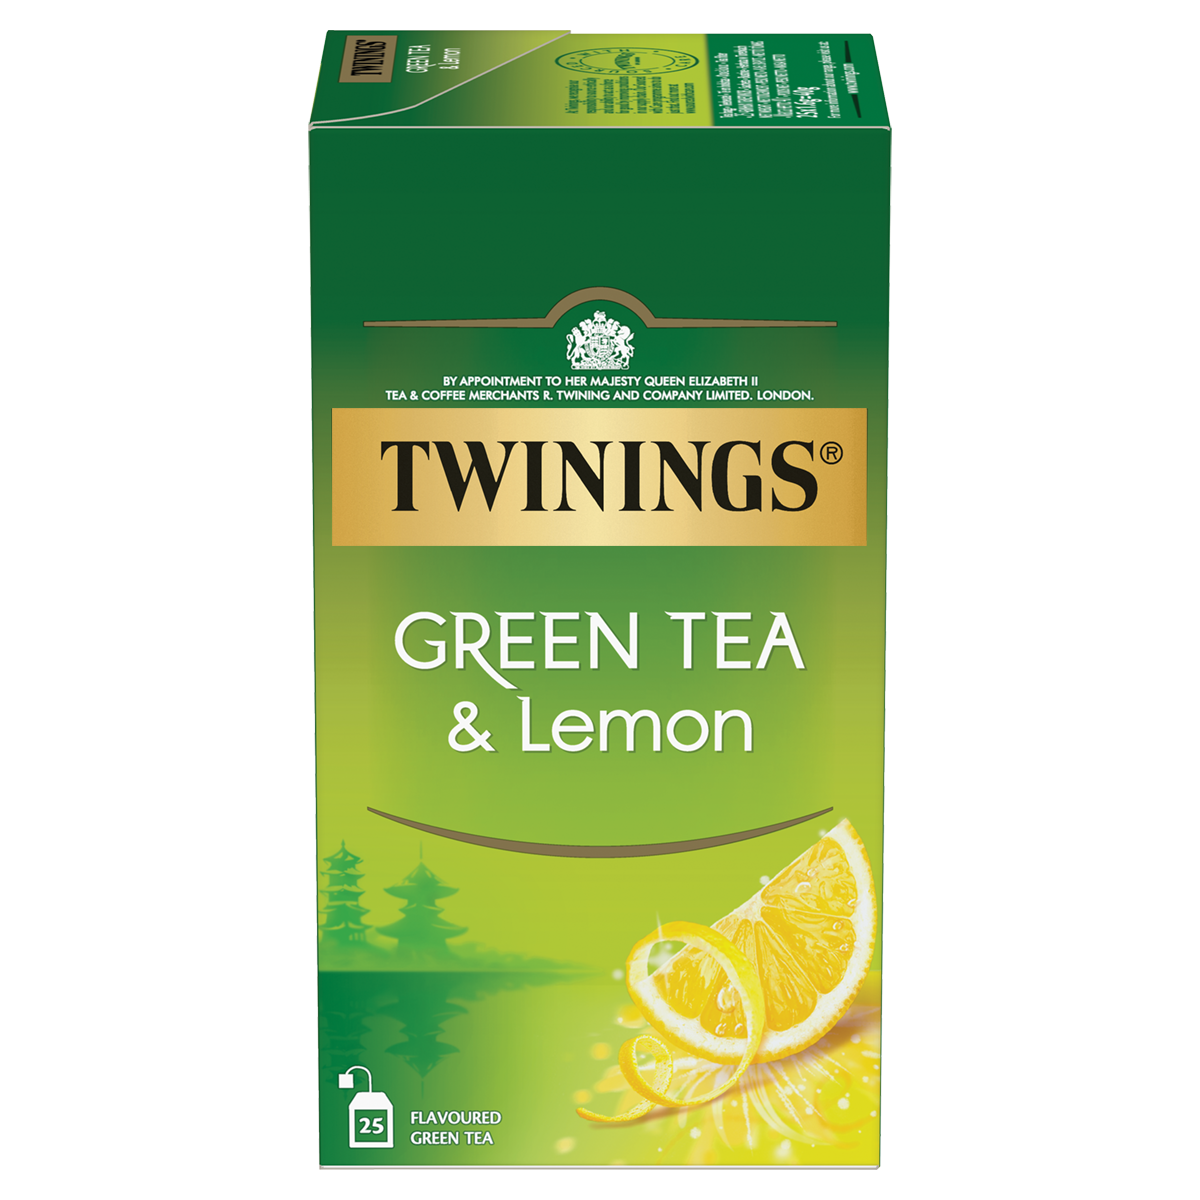  Green Tea & Lemon - der einzigartige Grüntee